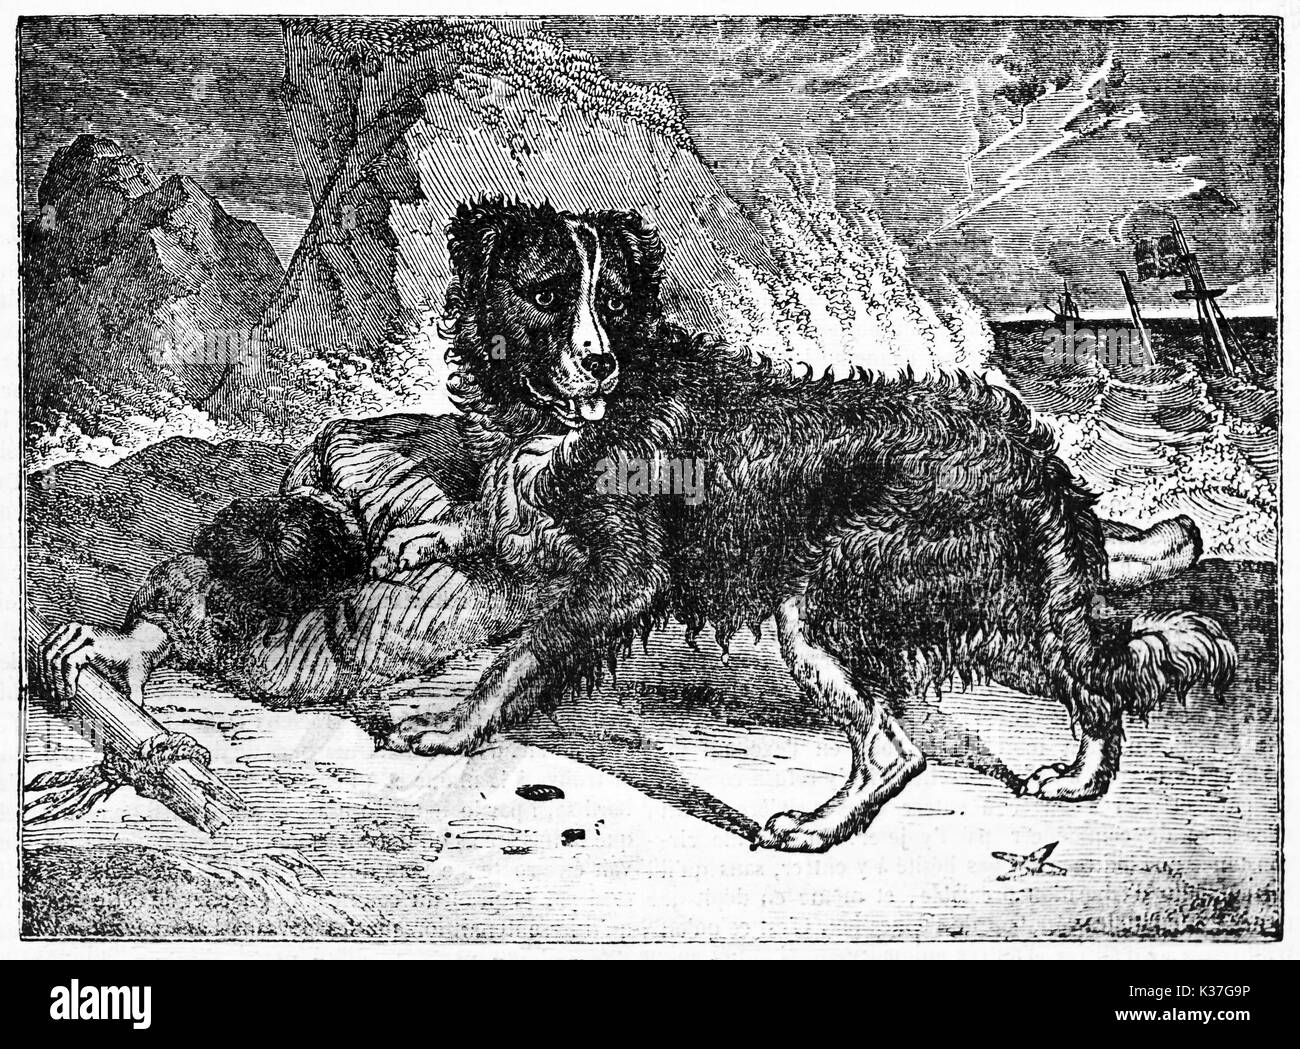 Avvisato TERRANOVA cane e il suo proprietario giacente dopo un naufragio. Vecchia illustrazione di autore non identificato, pubblicato il Magasin pittoresco, Parigi, 1834 Foto Stock